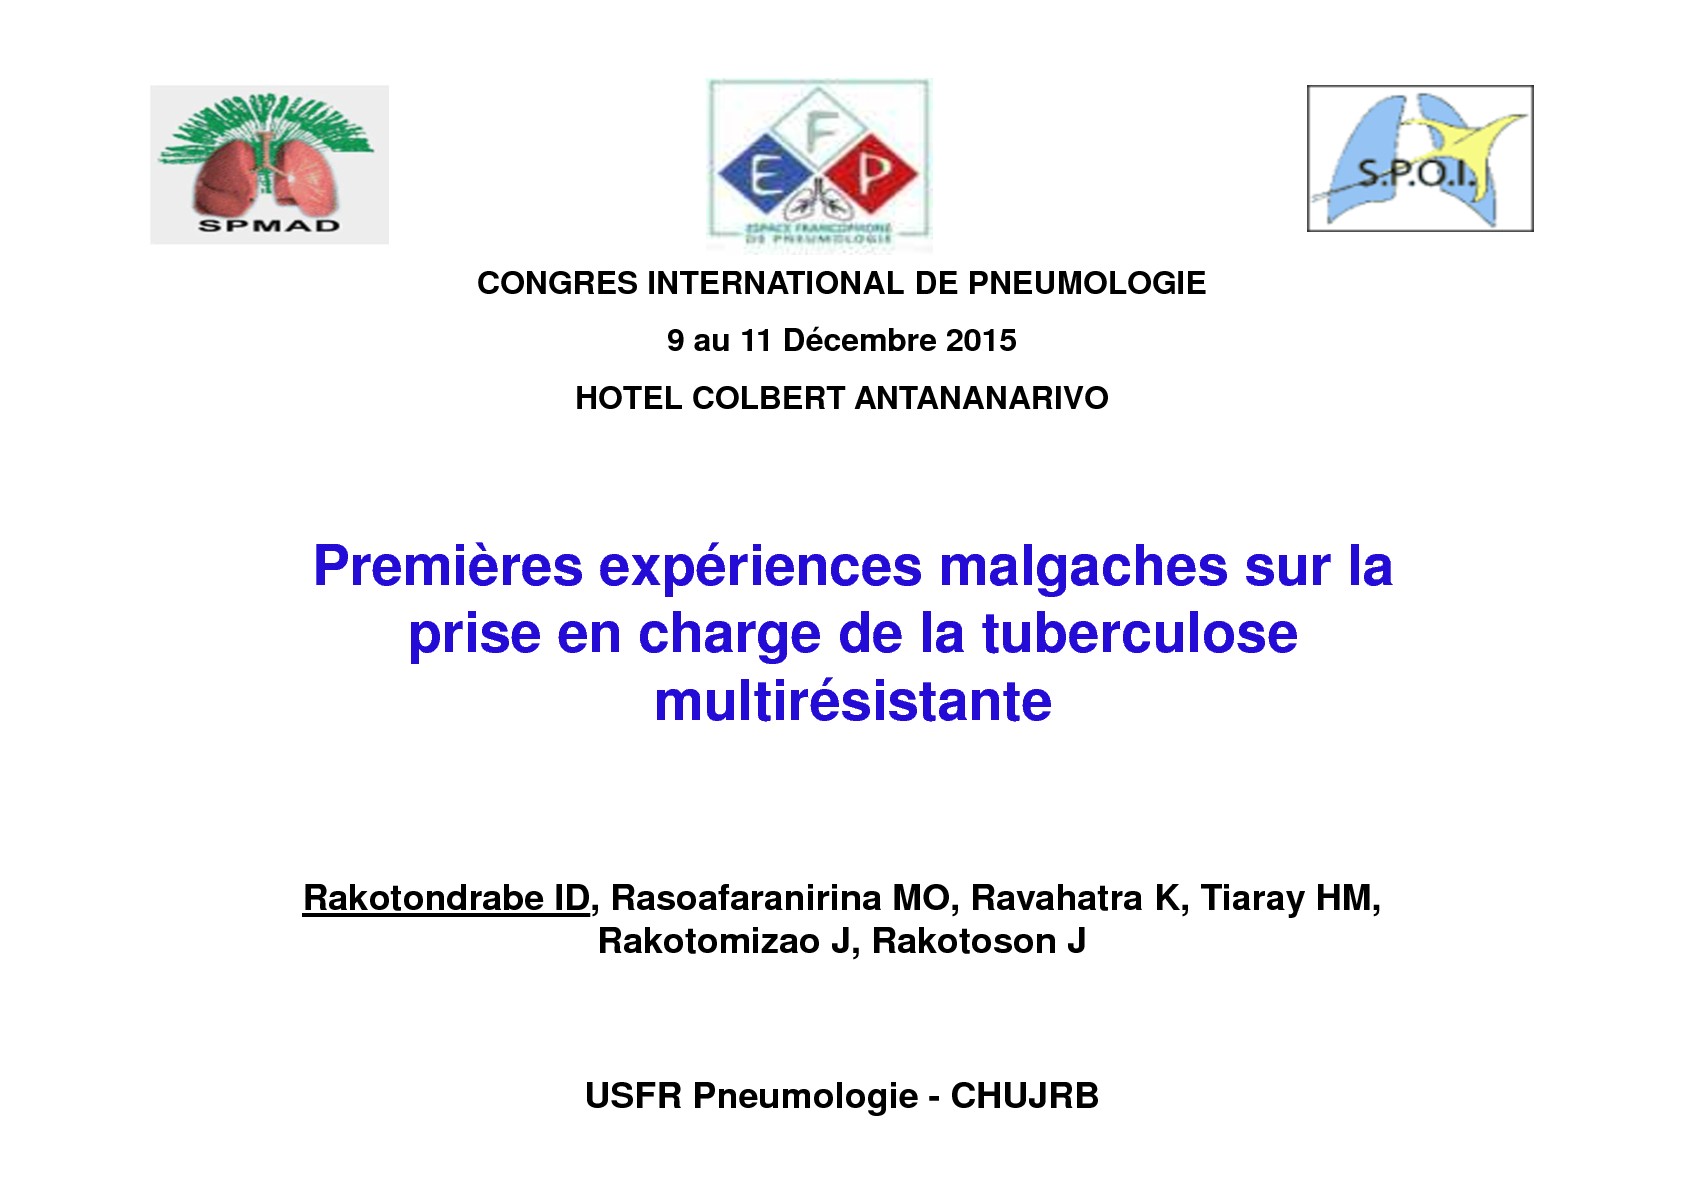 Premières expériences Malgaches sur la prise en charge de la tuberculose multirésistante. ID Rakotondrabe